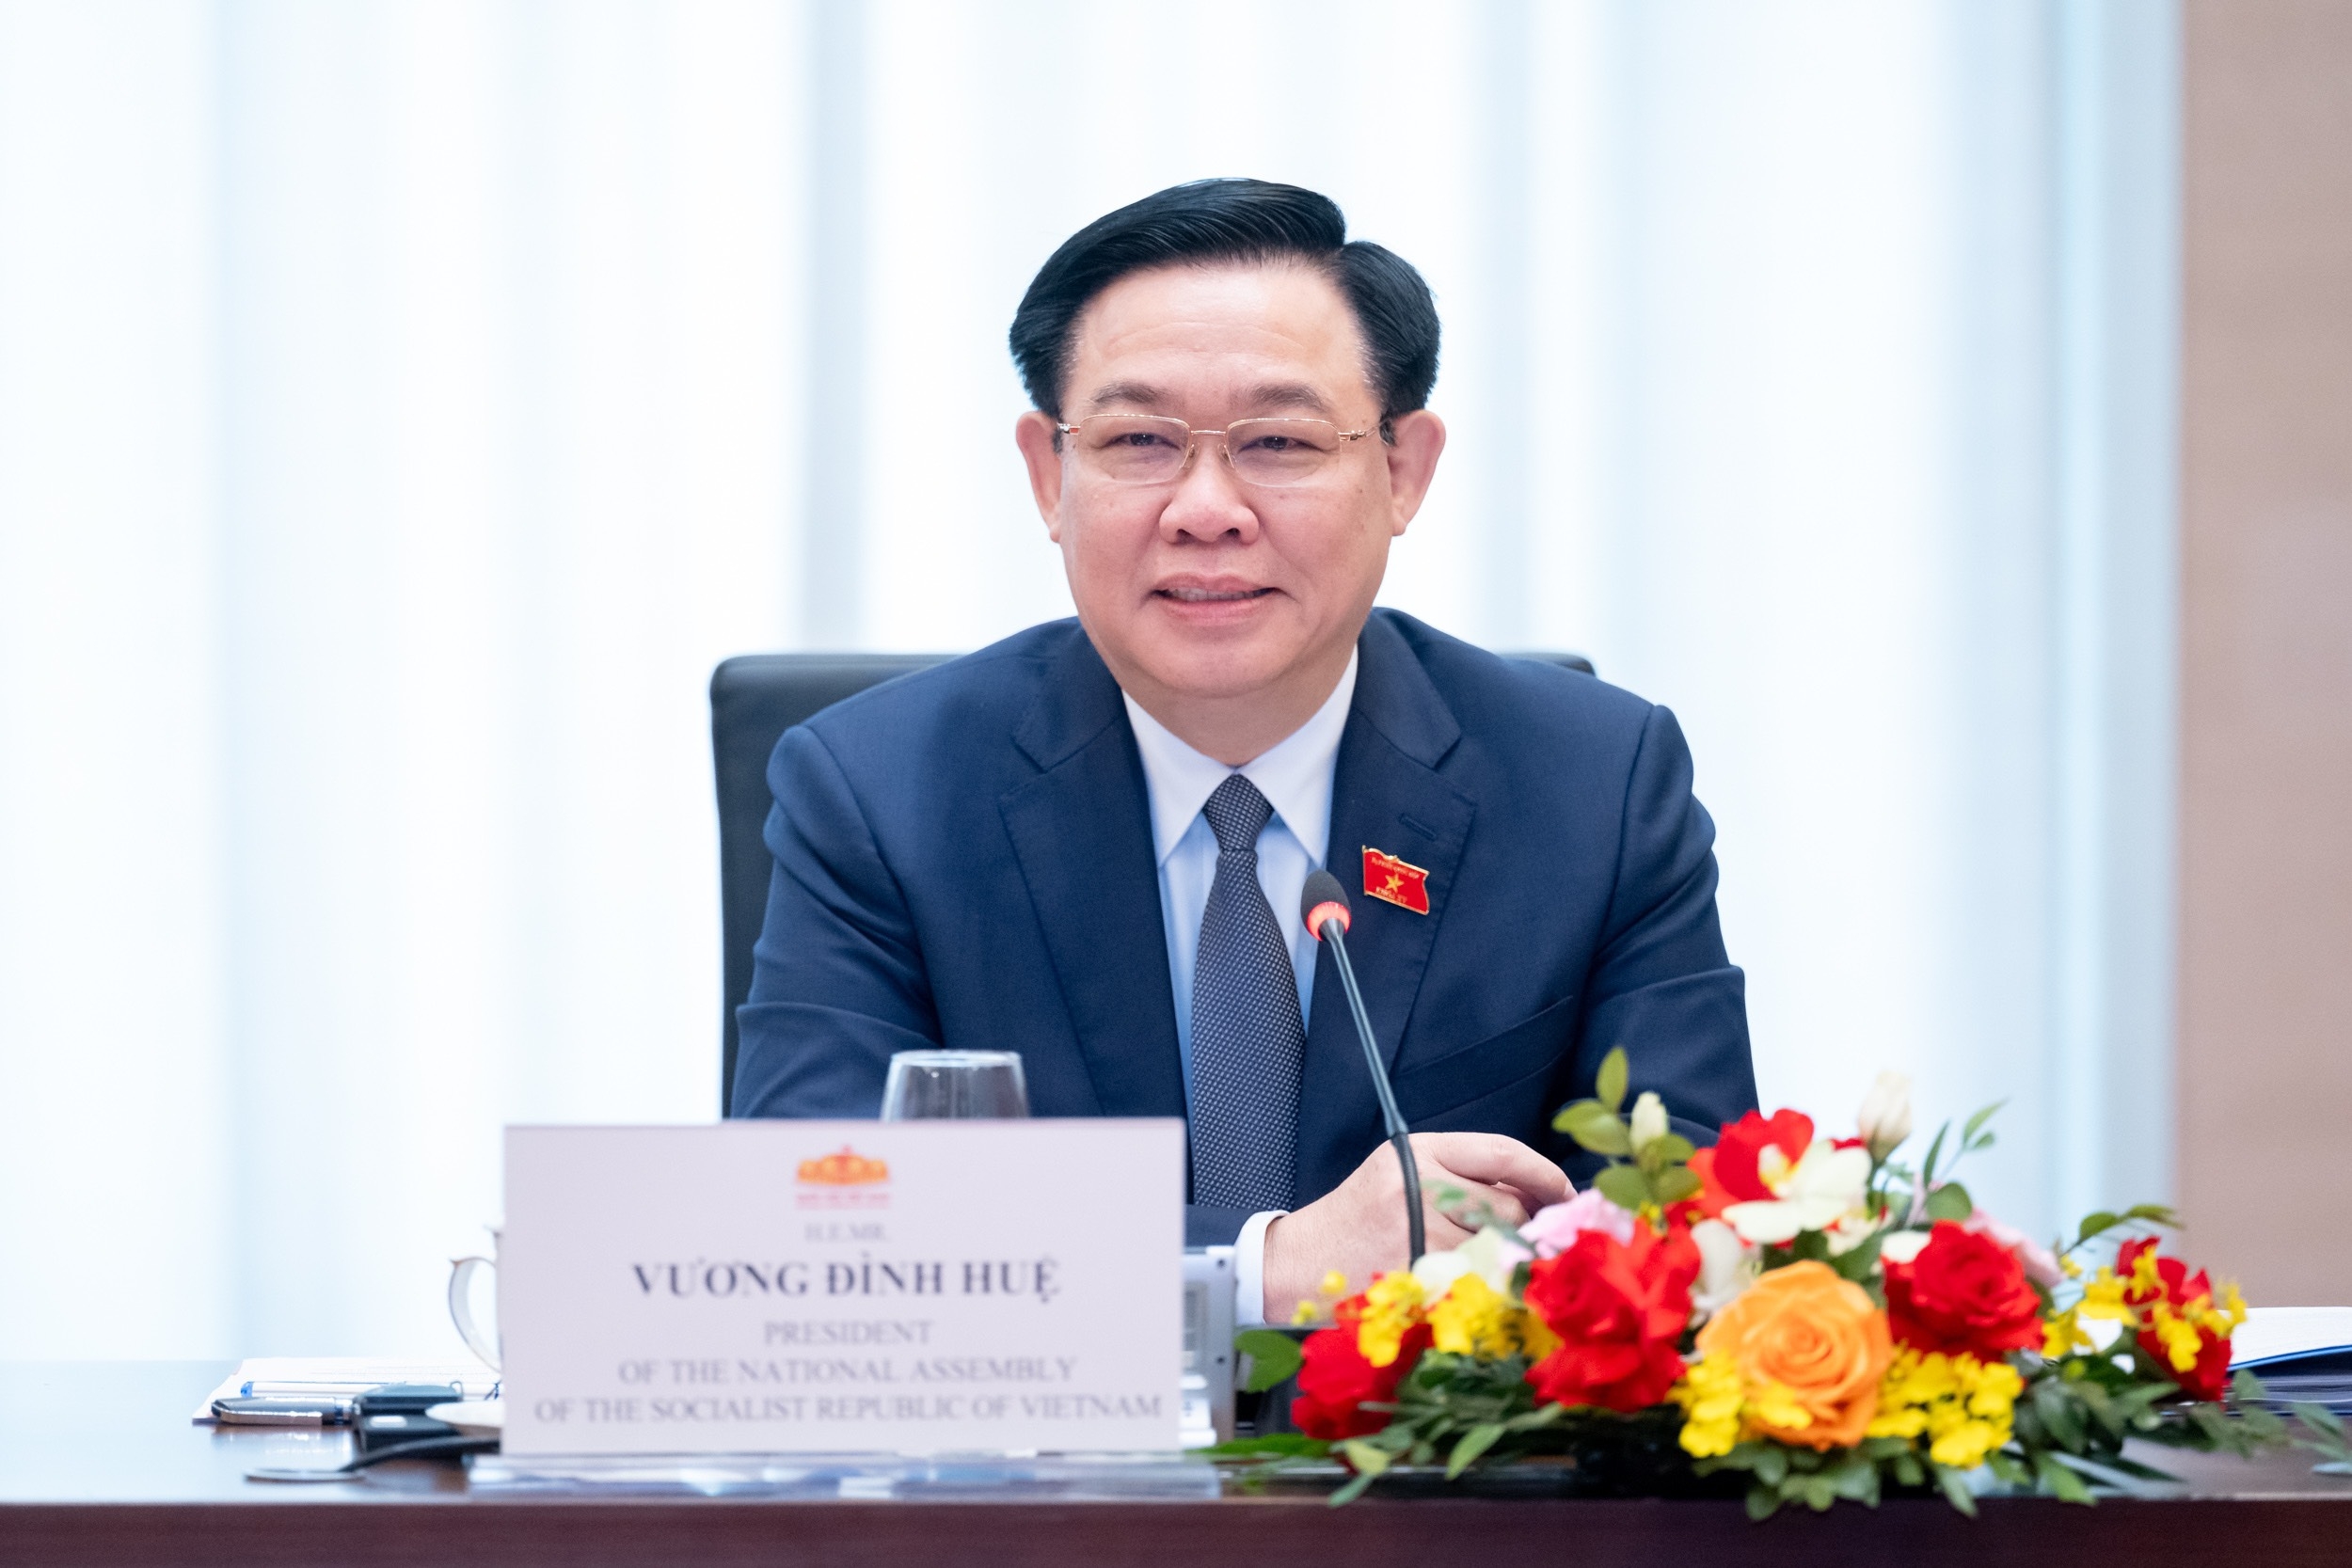 Chính phủ Việt Nam cam kết "3 bảo đảm", "3 cùng", để hỗ trợ doanh nghiệp Hoa Kỳ tham gia đầu tư, kinh doanh